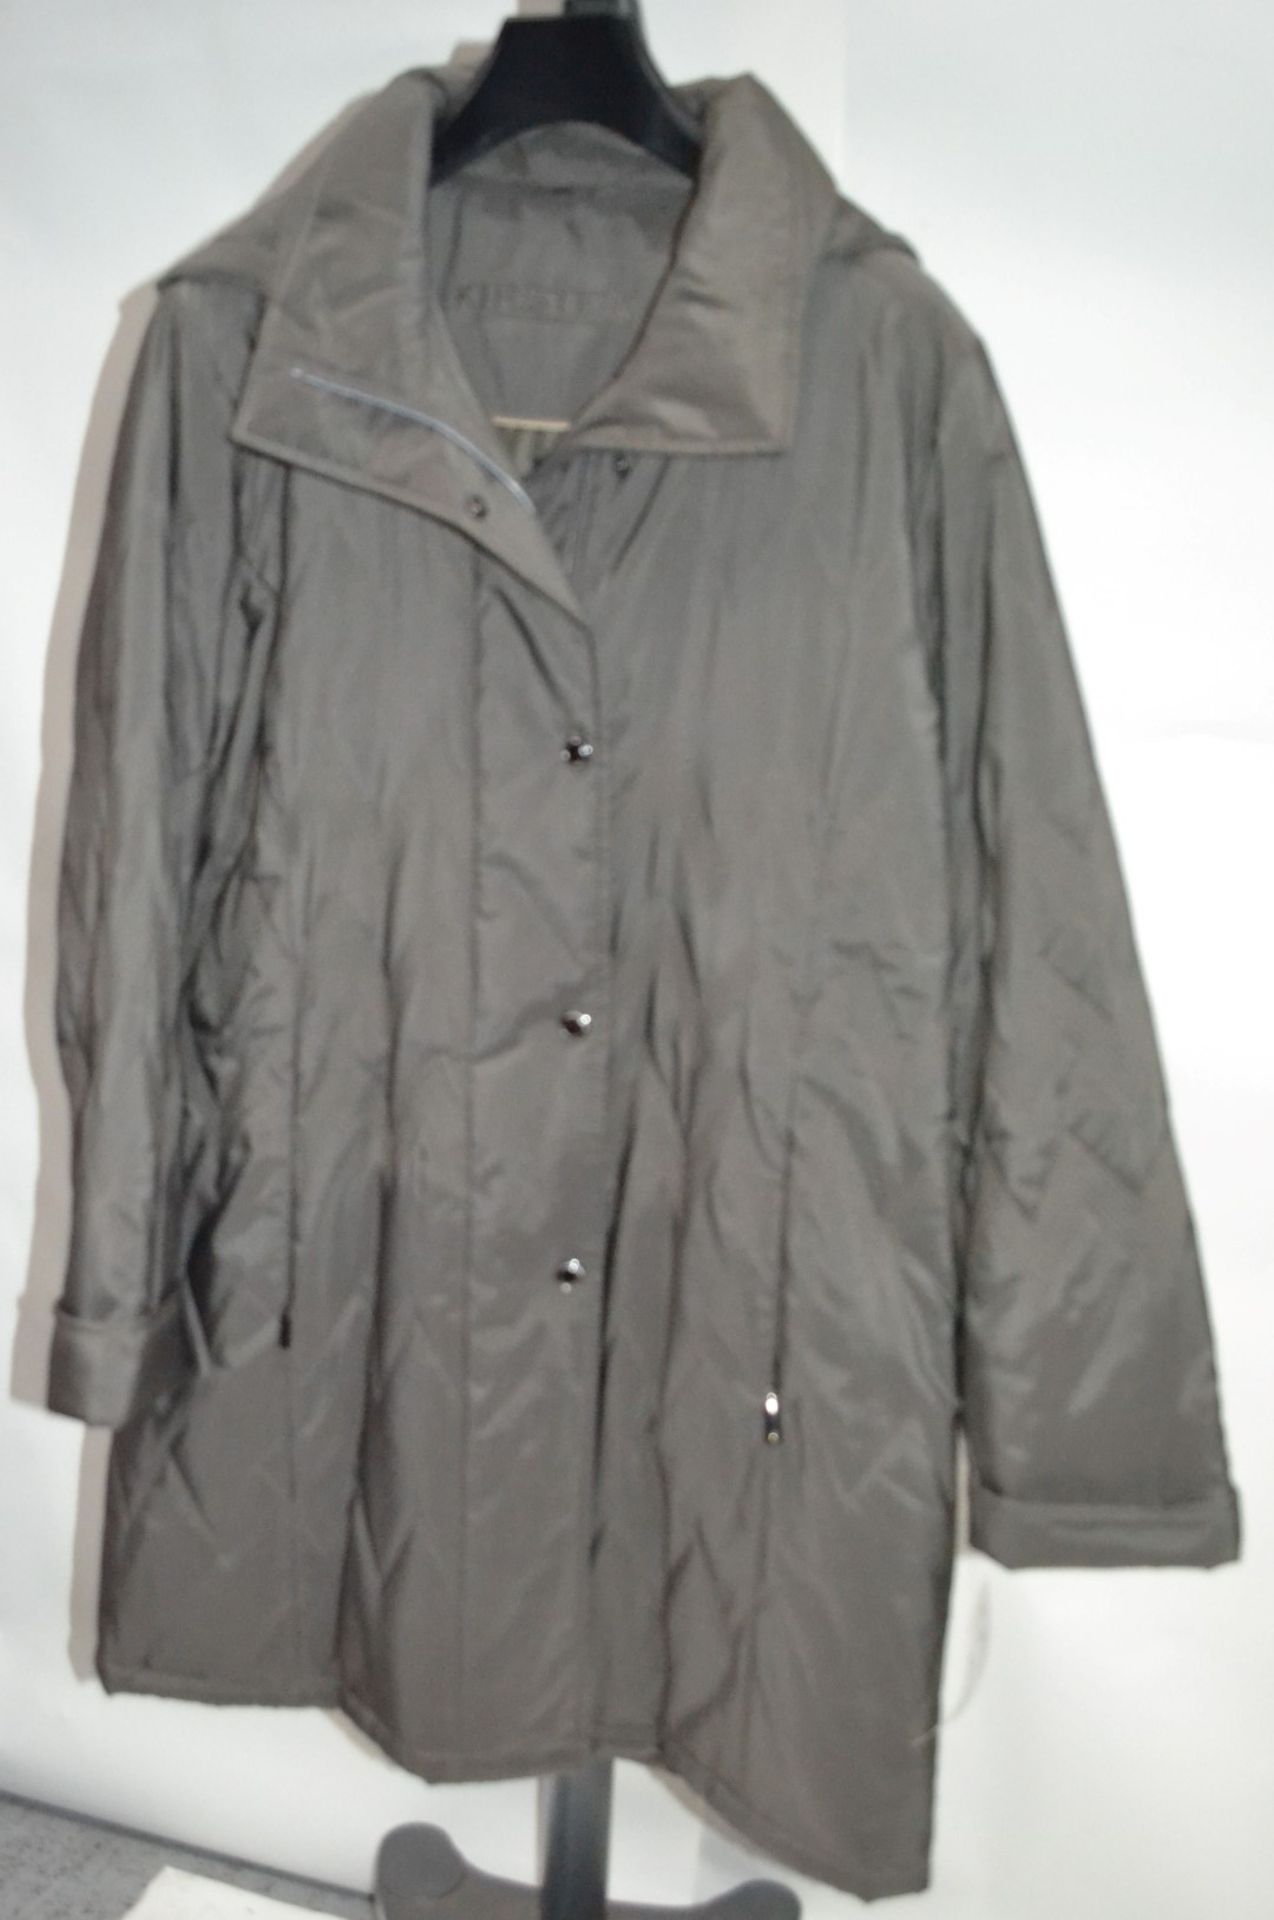 1 x Steilmann Kirsten Womens Hooded Grey Size 16 Coat - CL210 - Ref SC2058 - Location: Altrincham WA